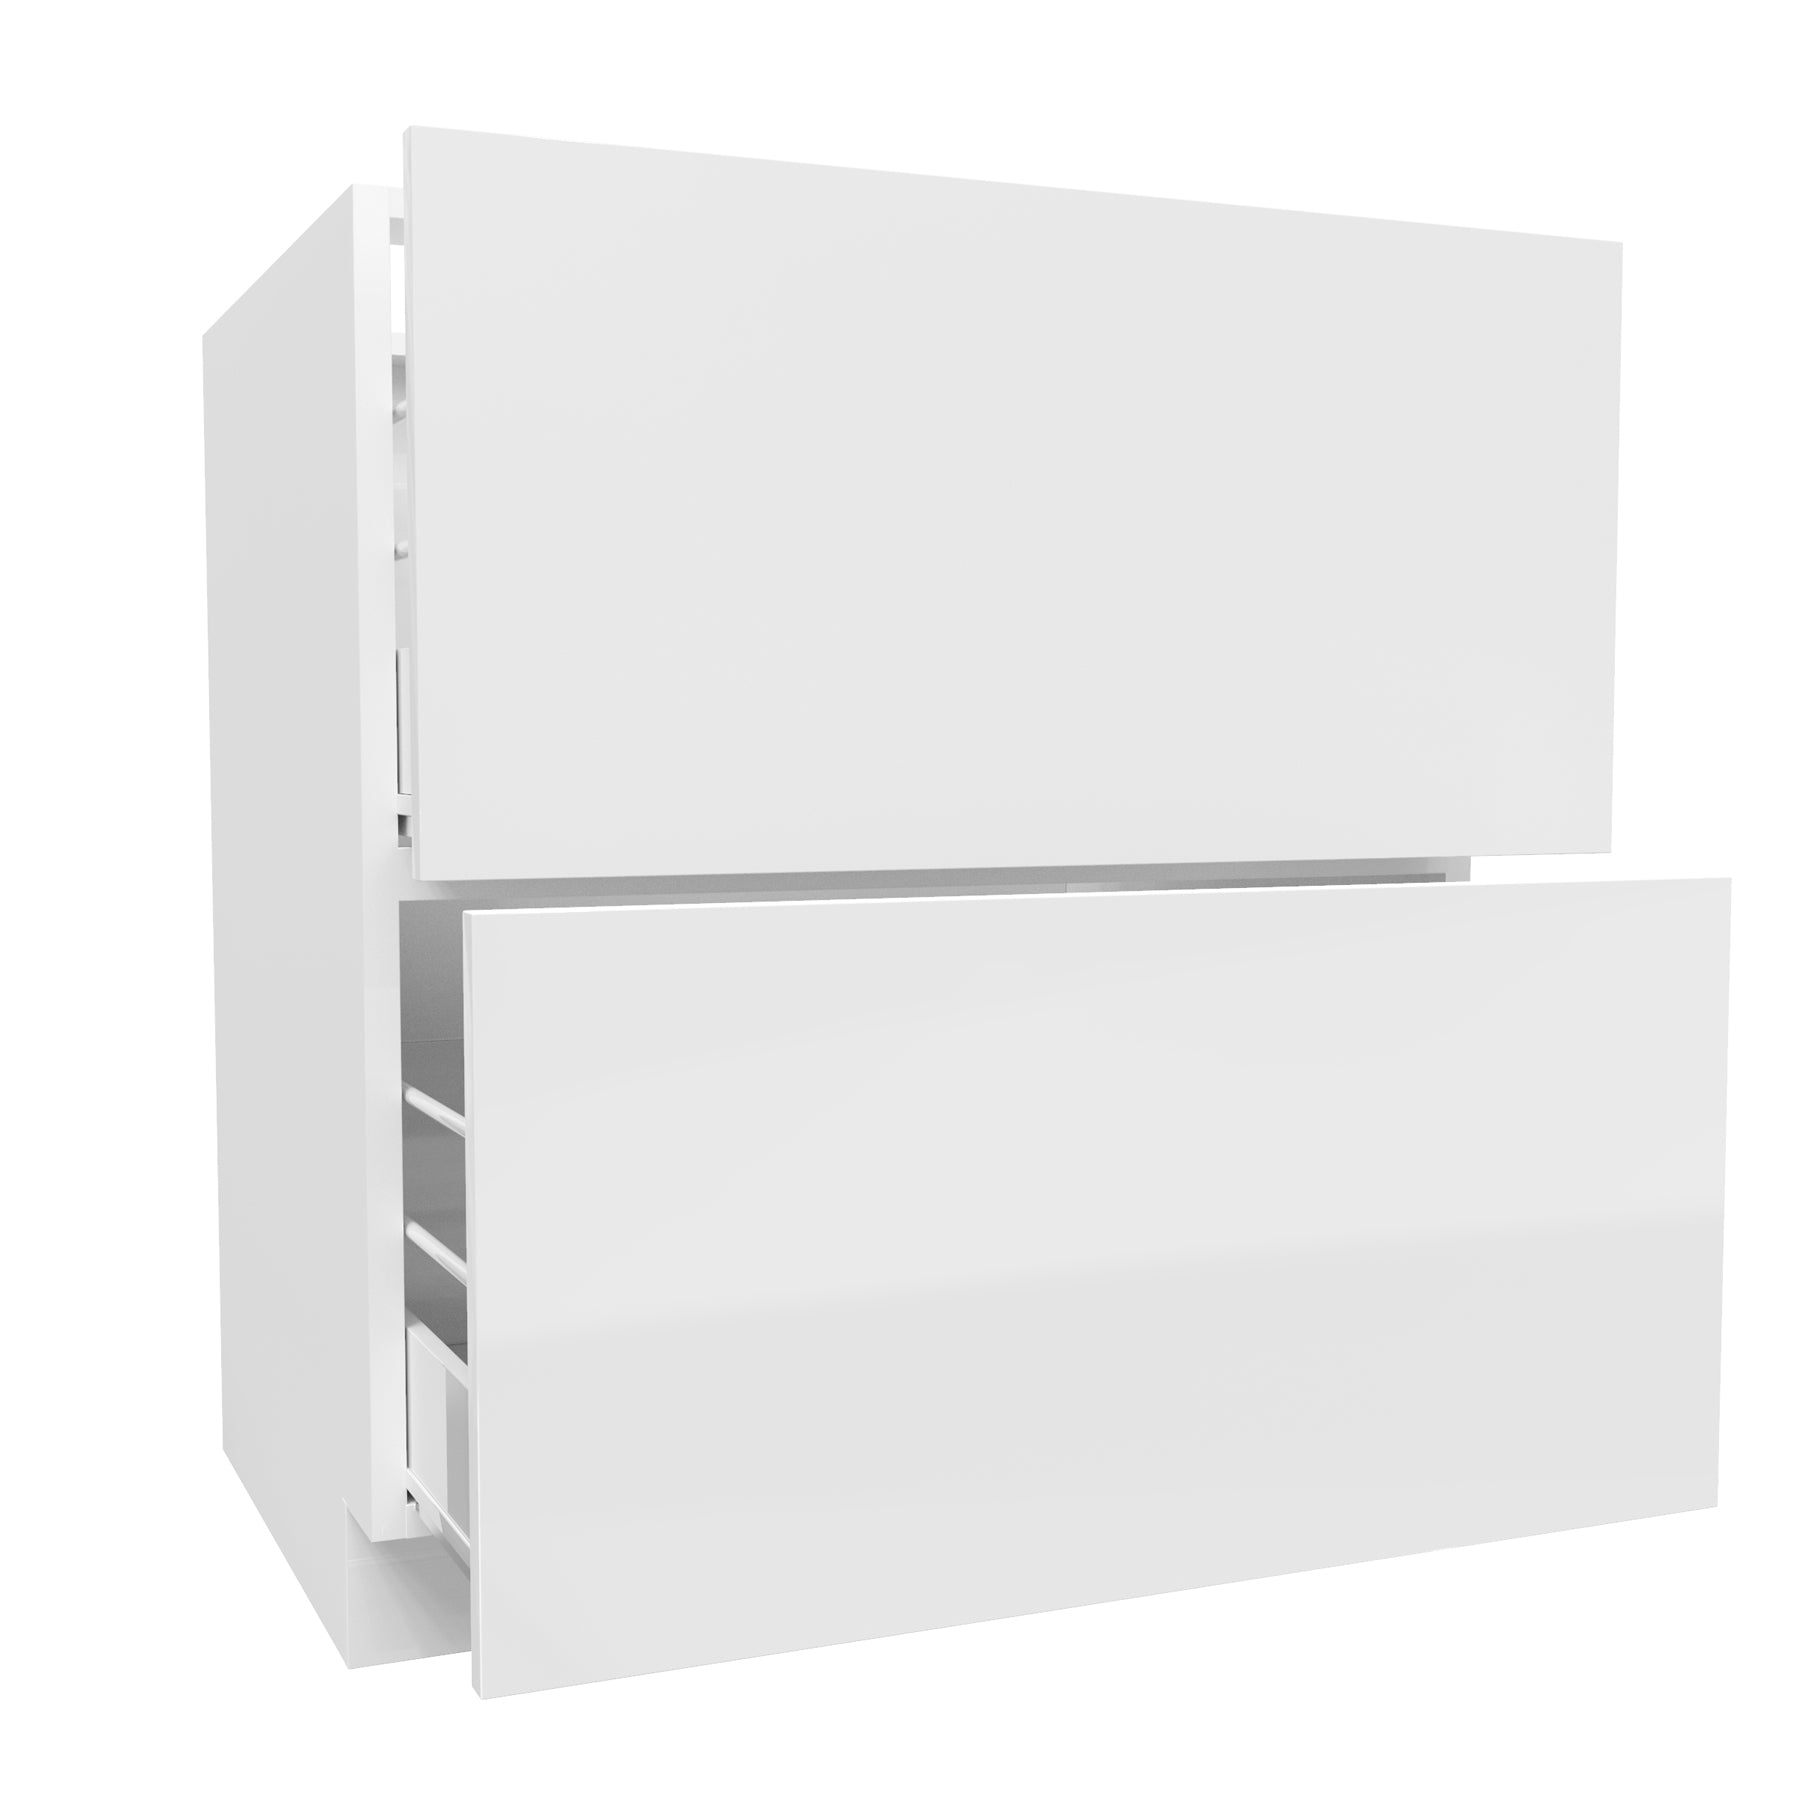 2 Drawer Base Cabinet | Milano White | 36W x 34.5H x 24D